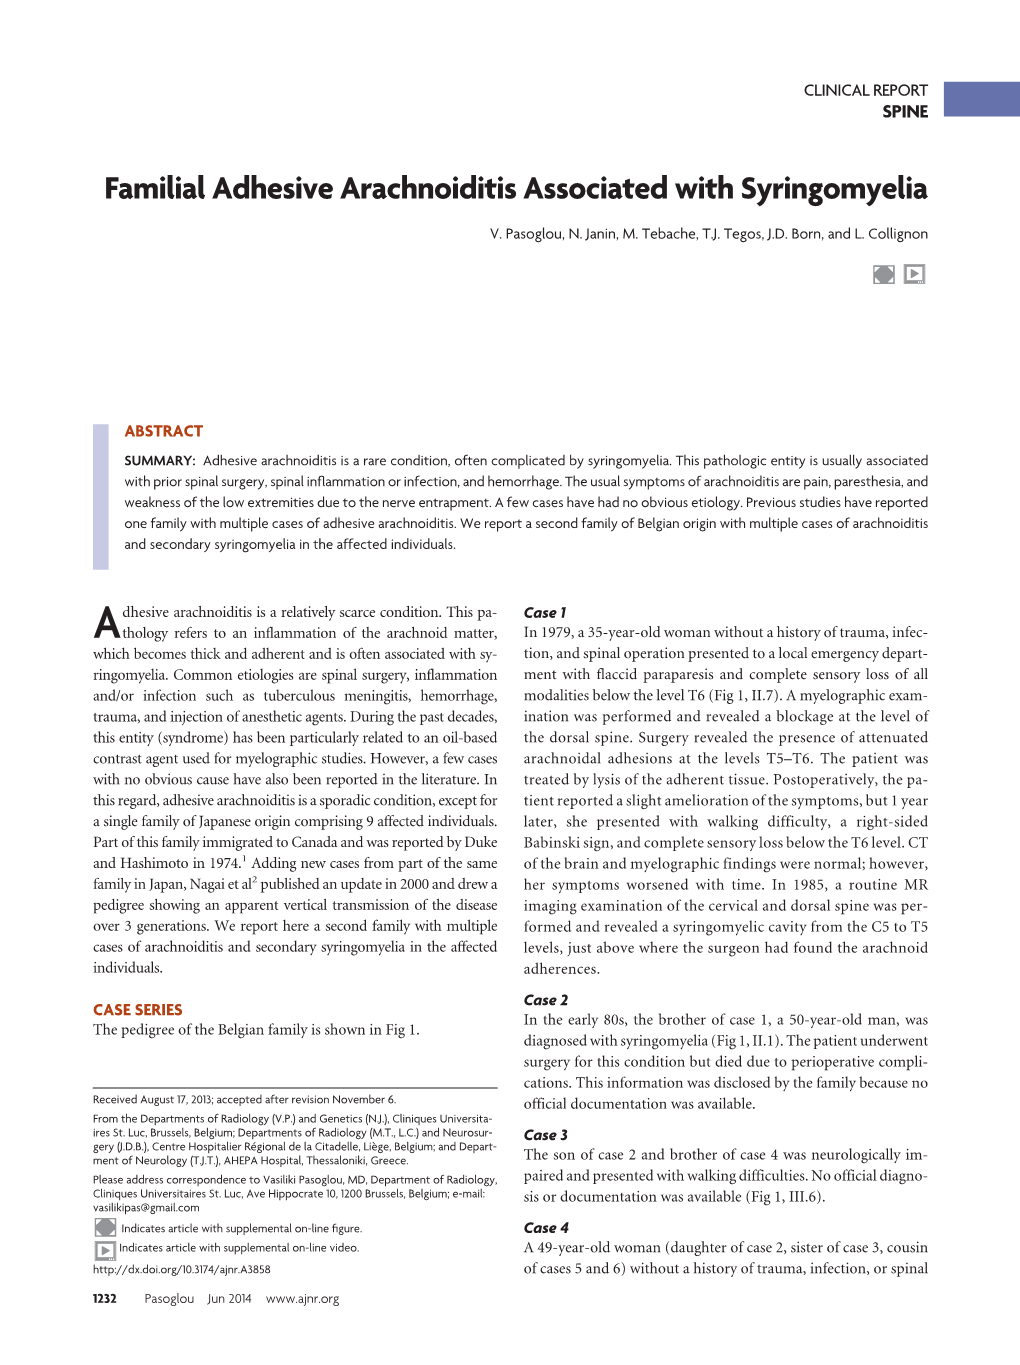 Familial Adhesive Arachnoiditis Associated with Syringomyelia